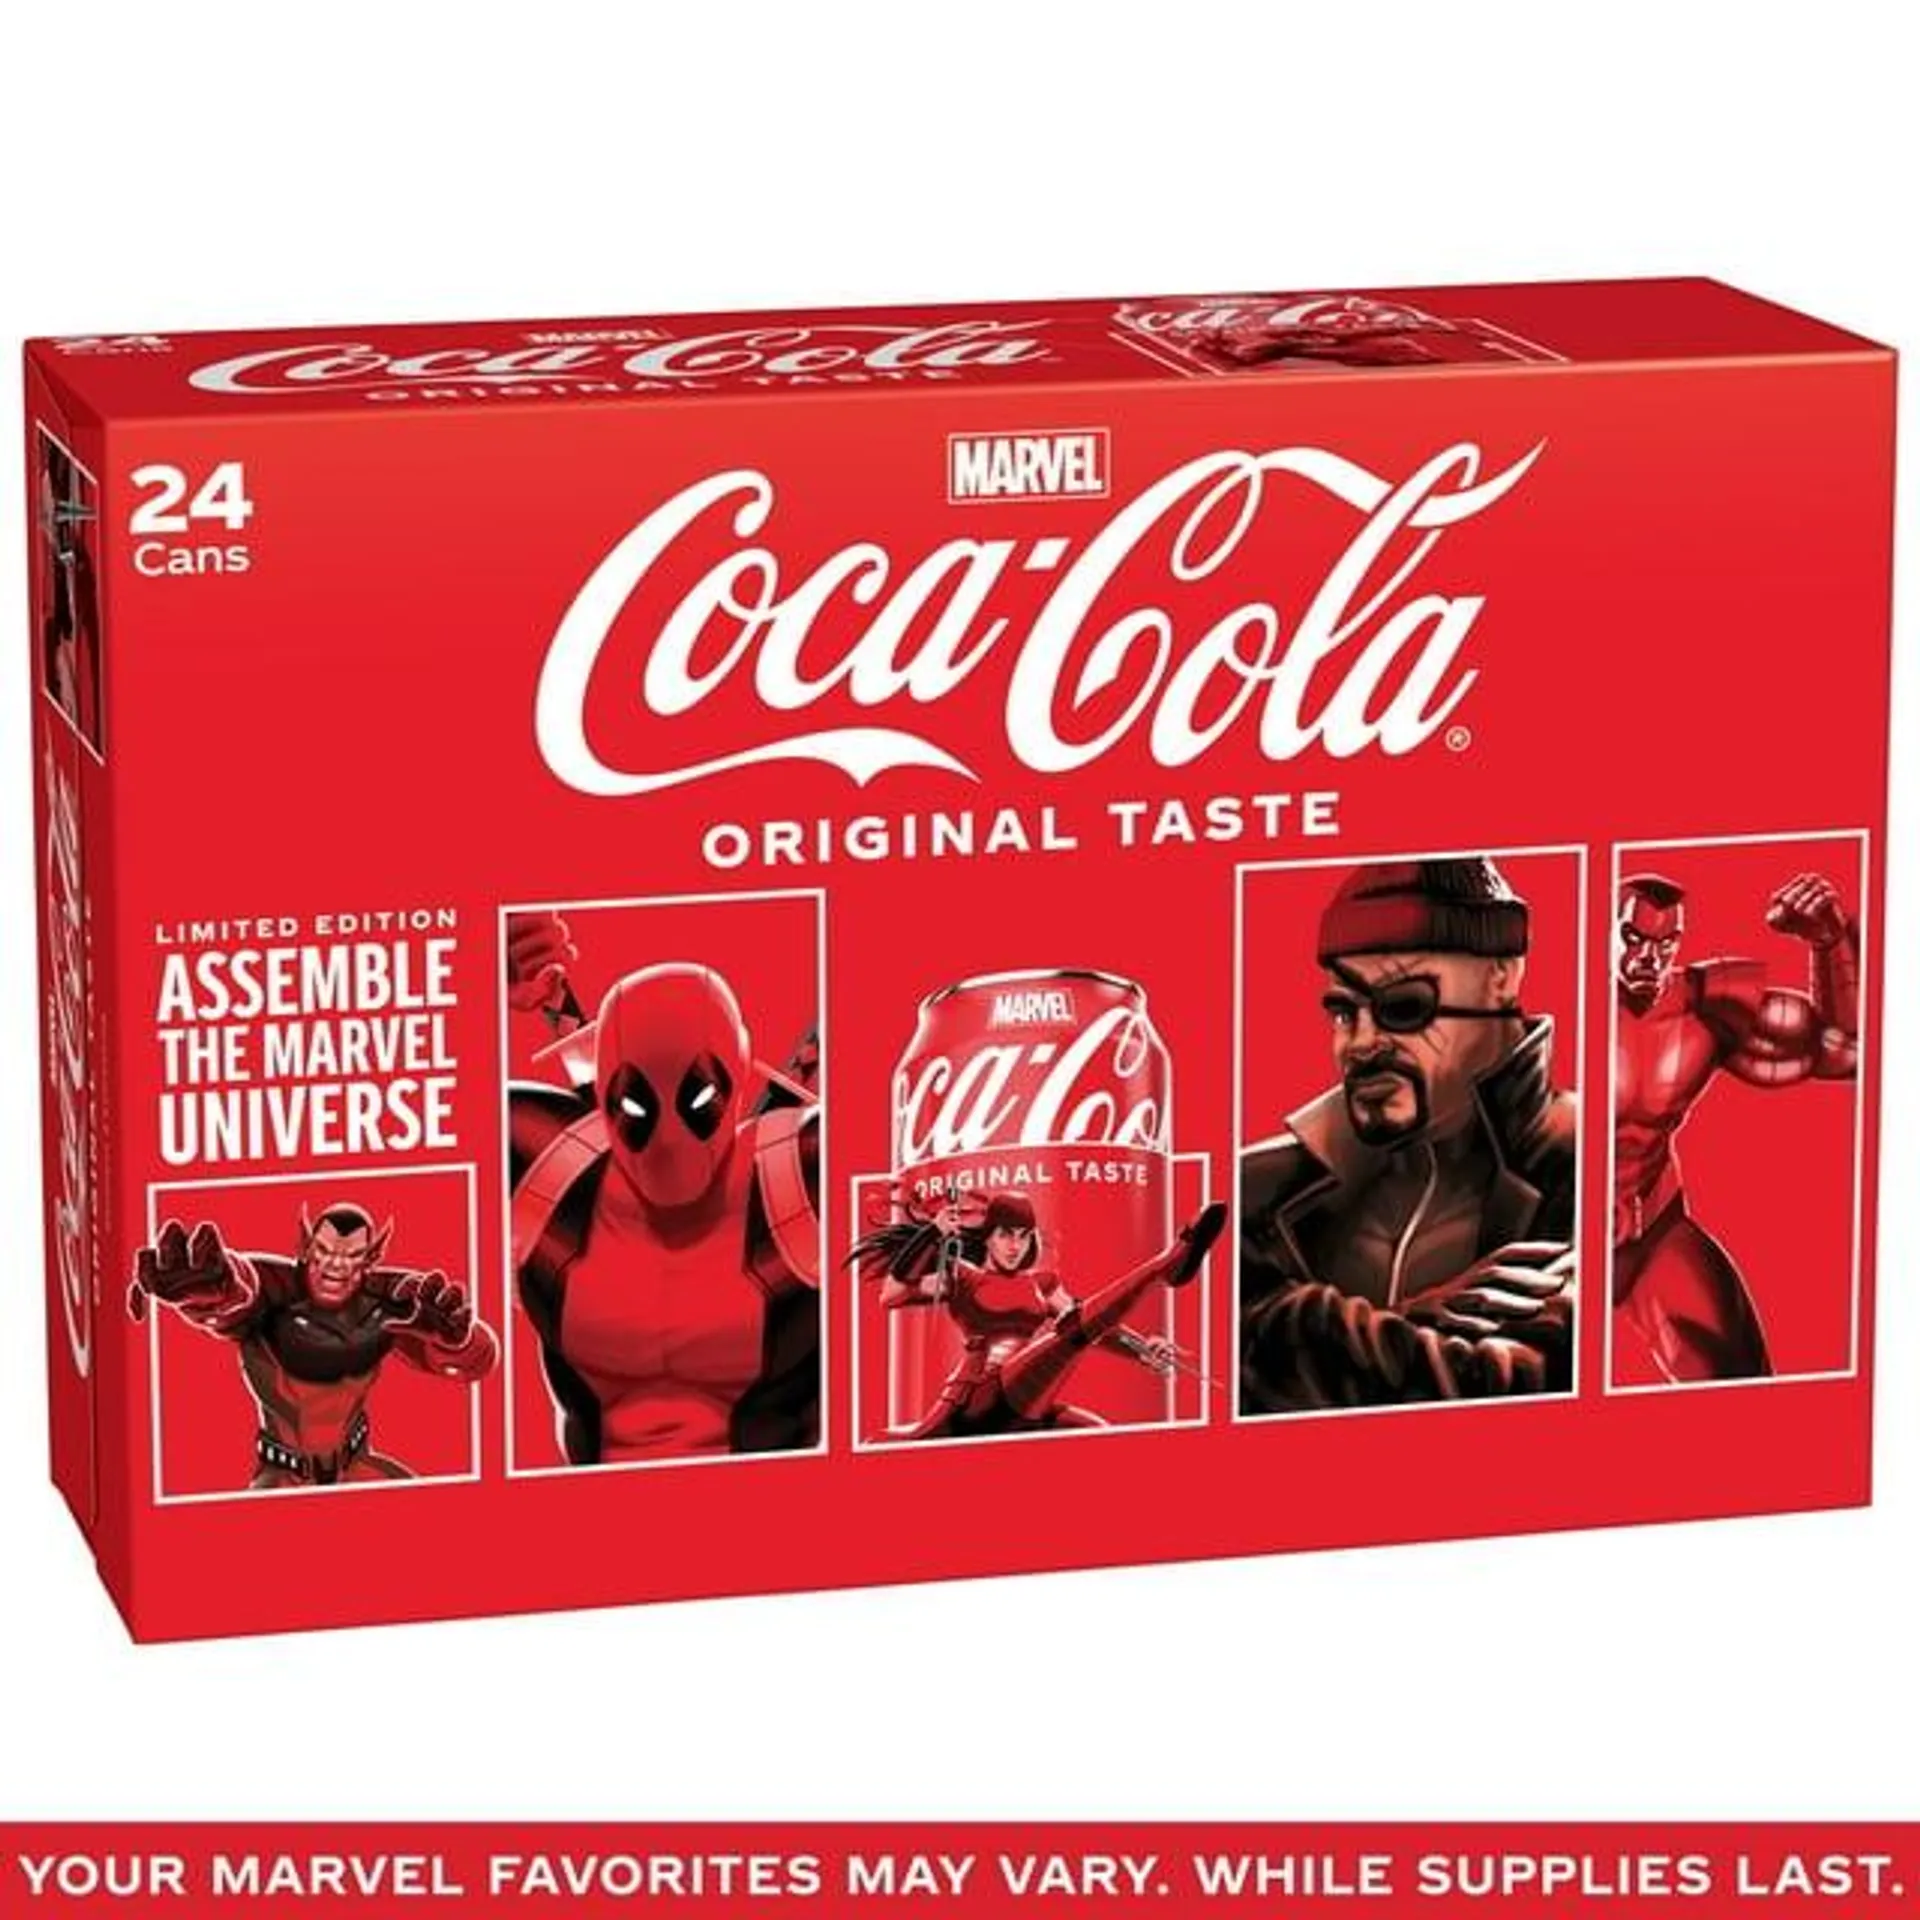 Coca-Cola Classic Soda Pop, 12 fl oz Cans, 24 Pack